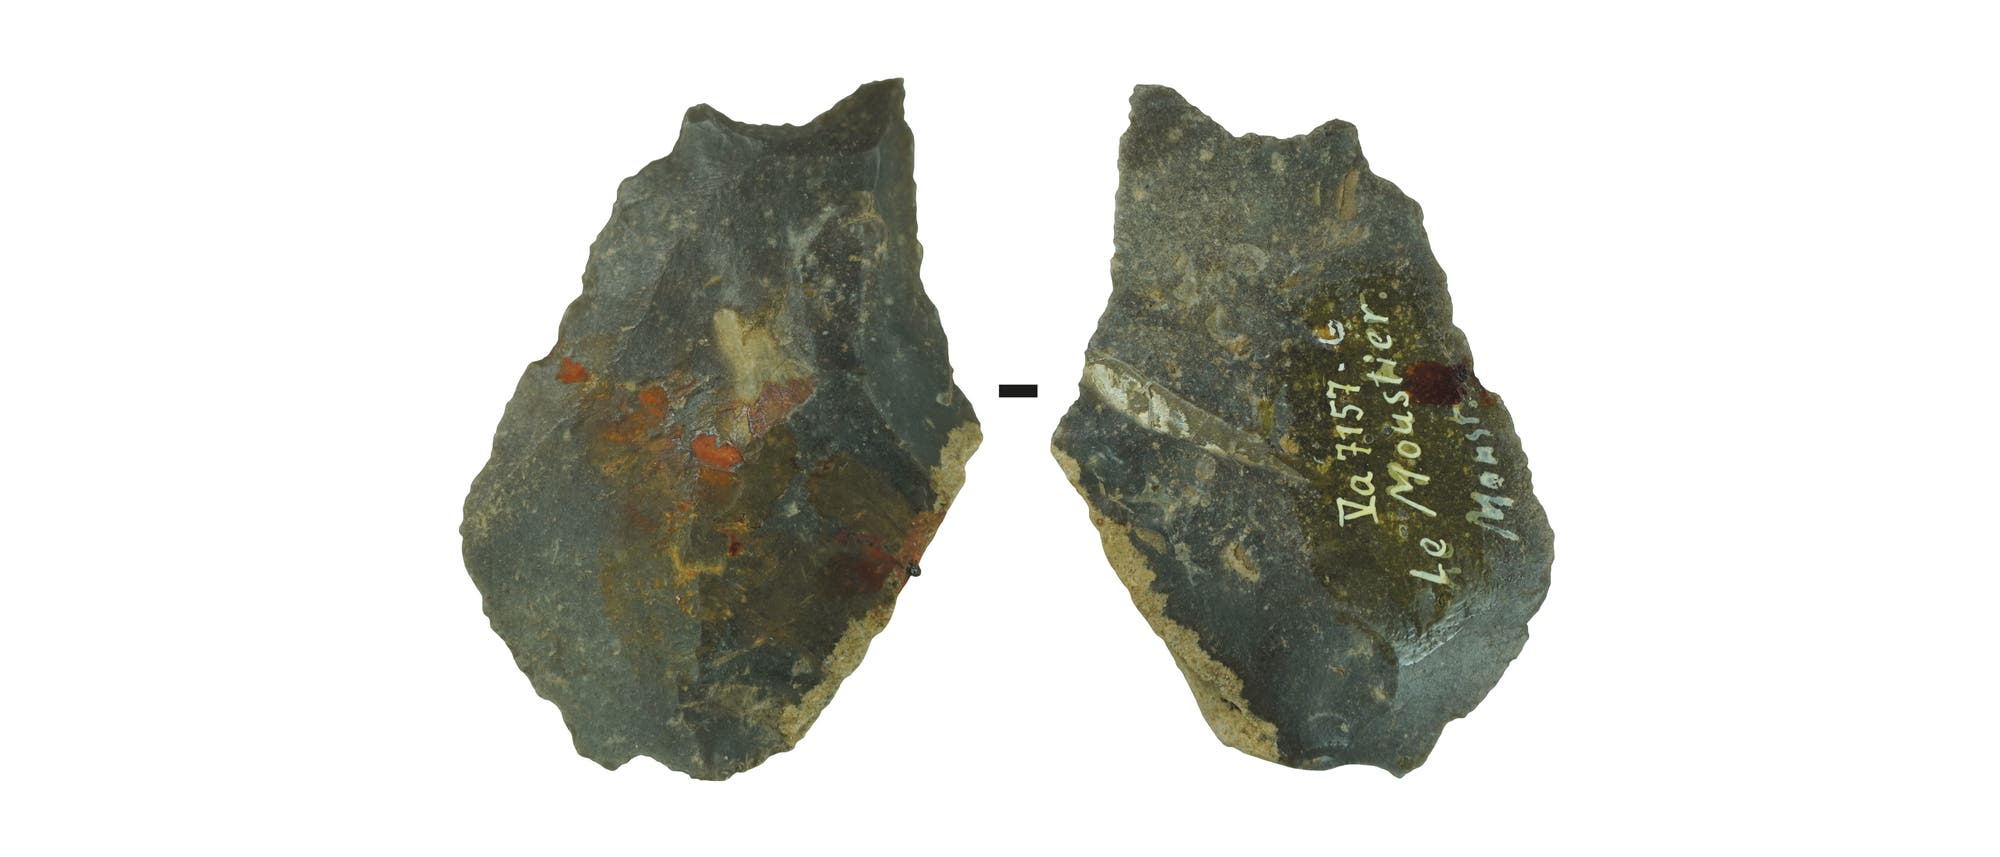 Francia: Arcilla viscosa del Paleolítico hecha de ocre y betún